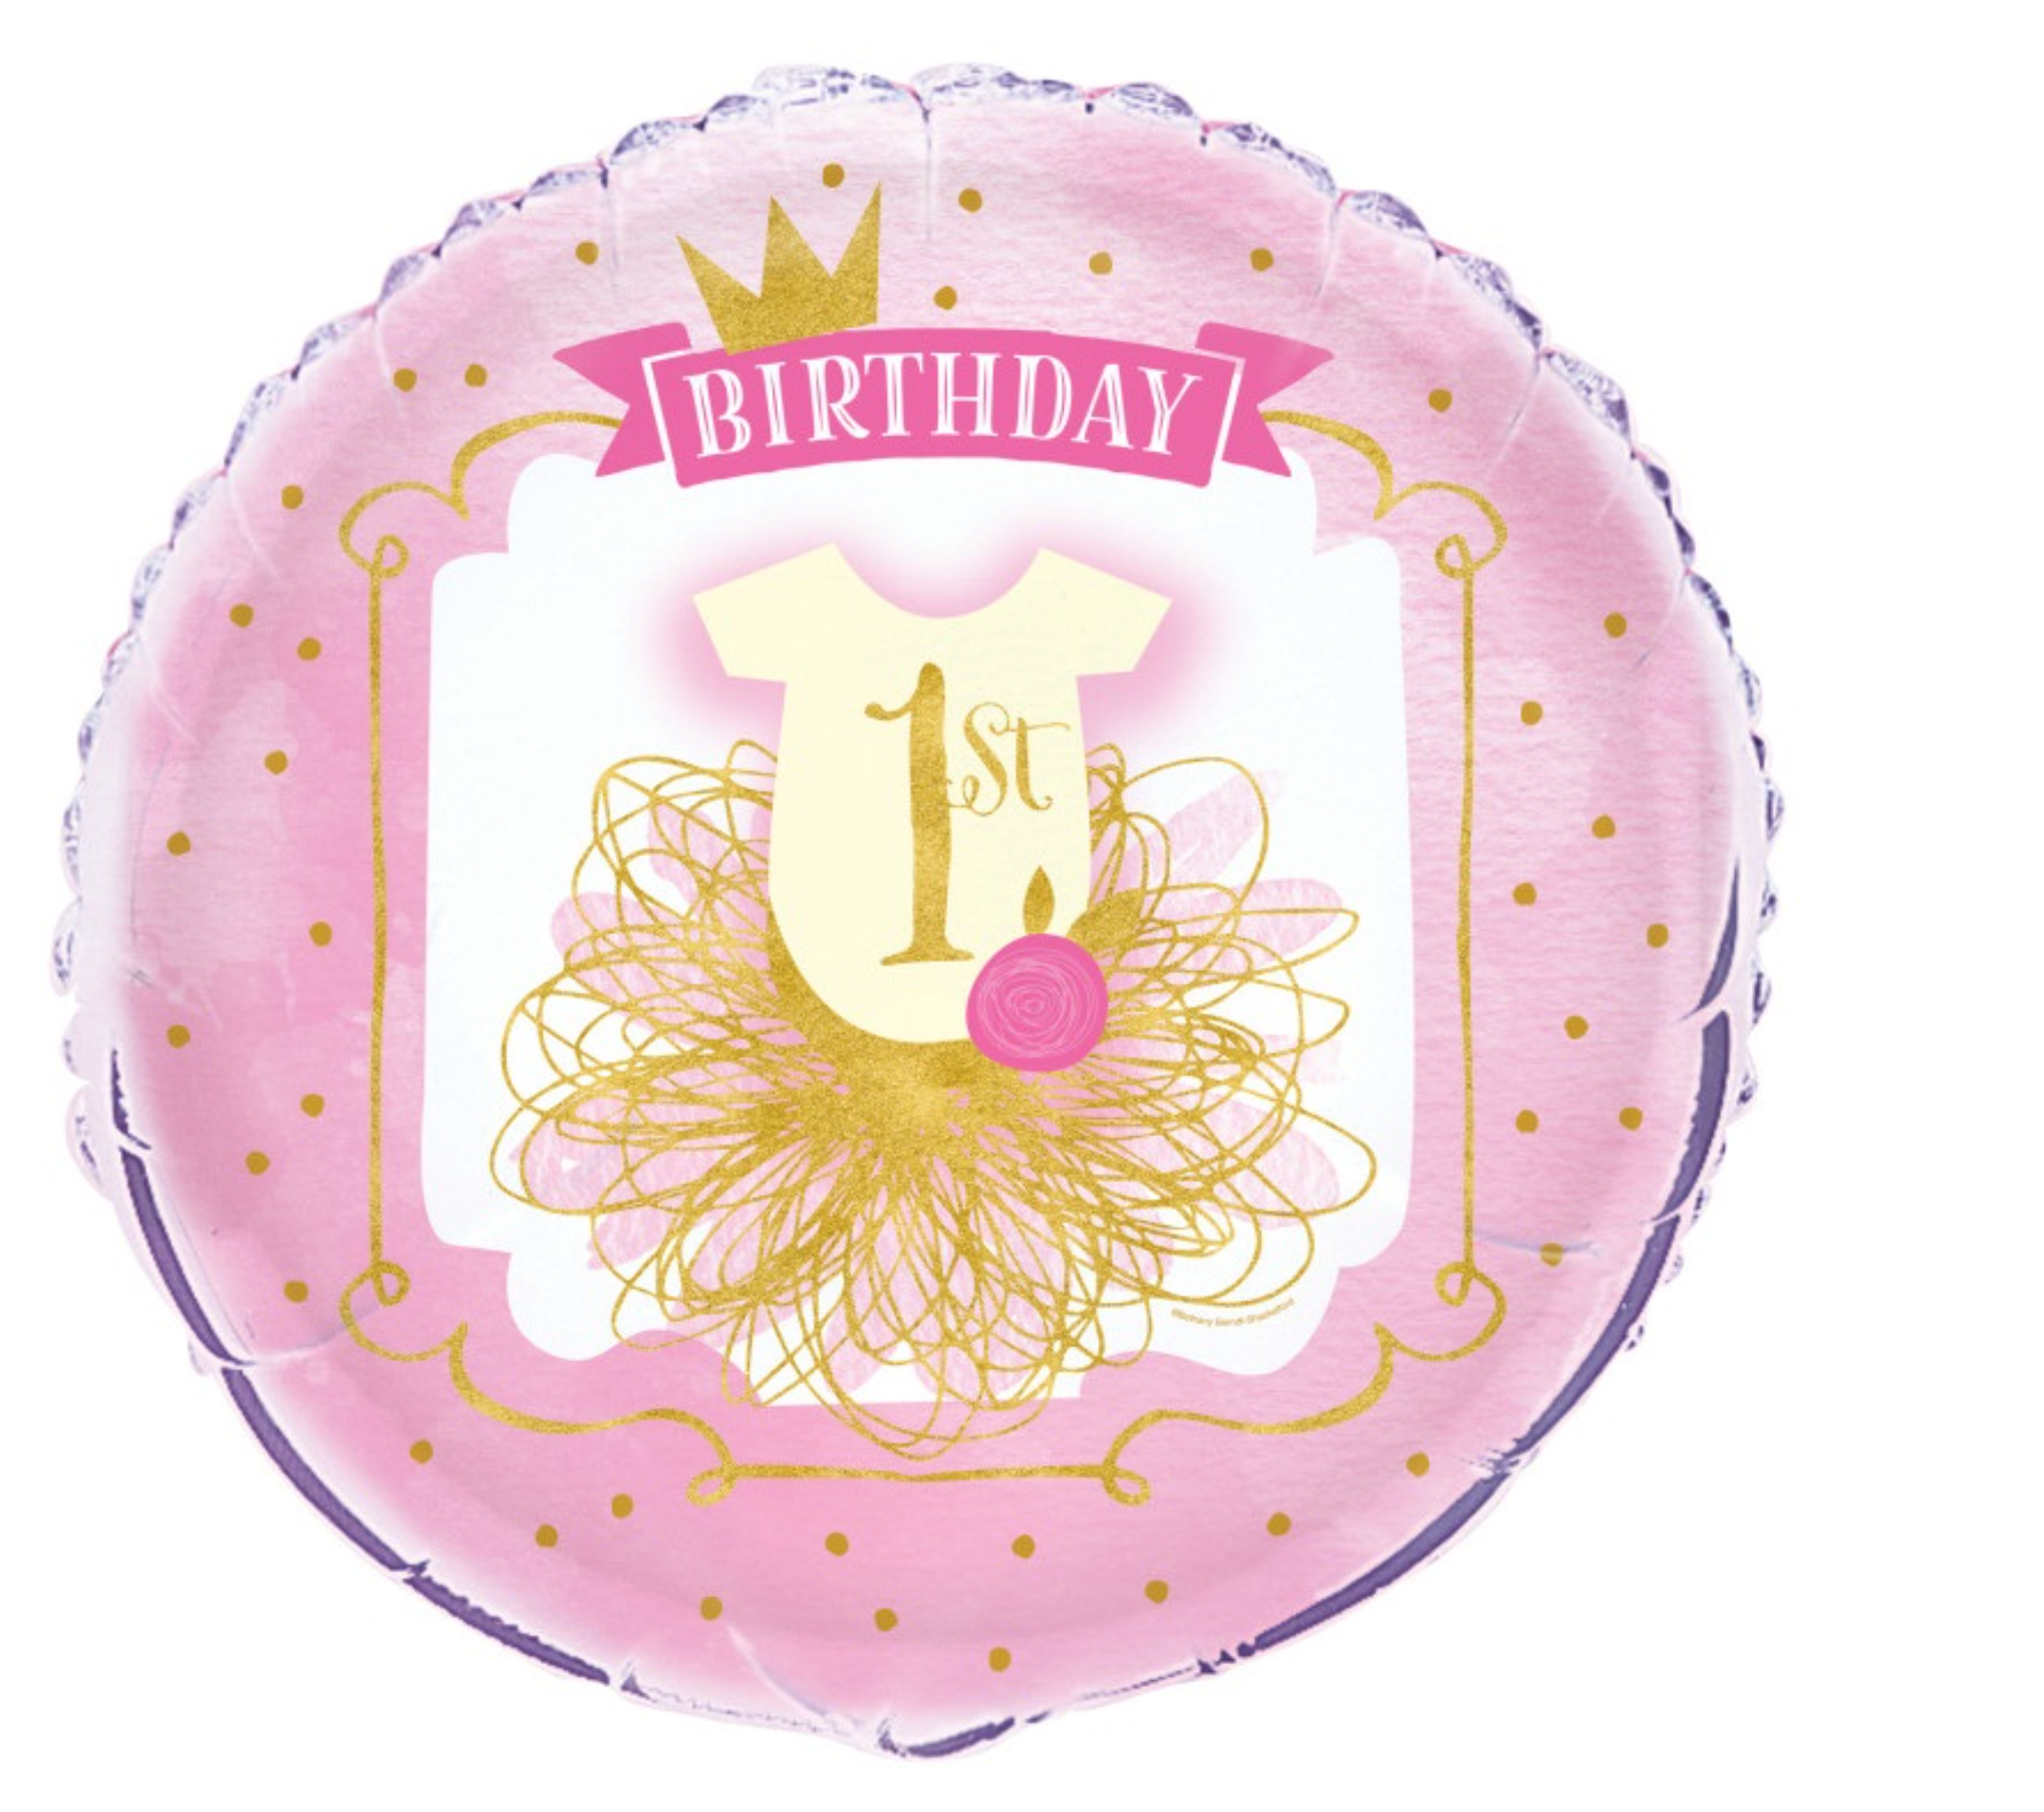 Pink & Gold First Birthday Round Foil Balloon 18